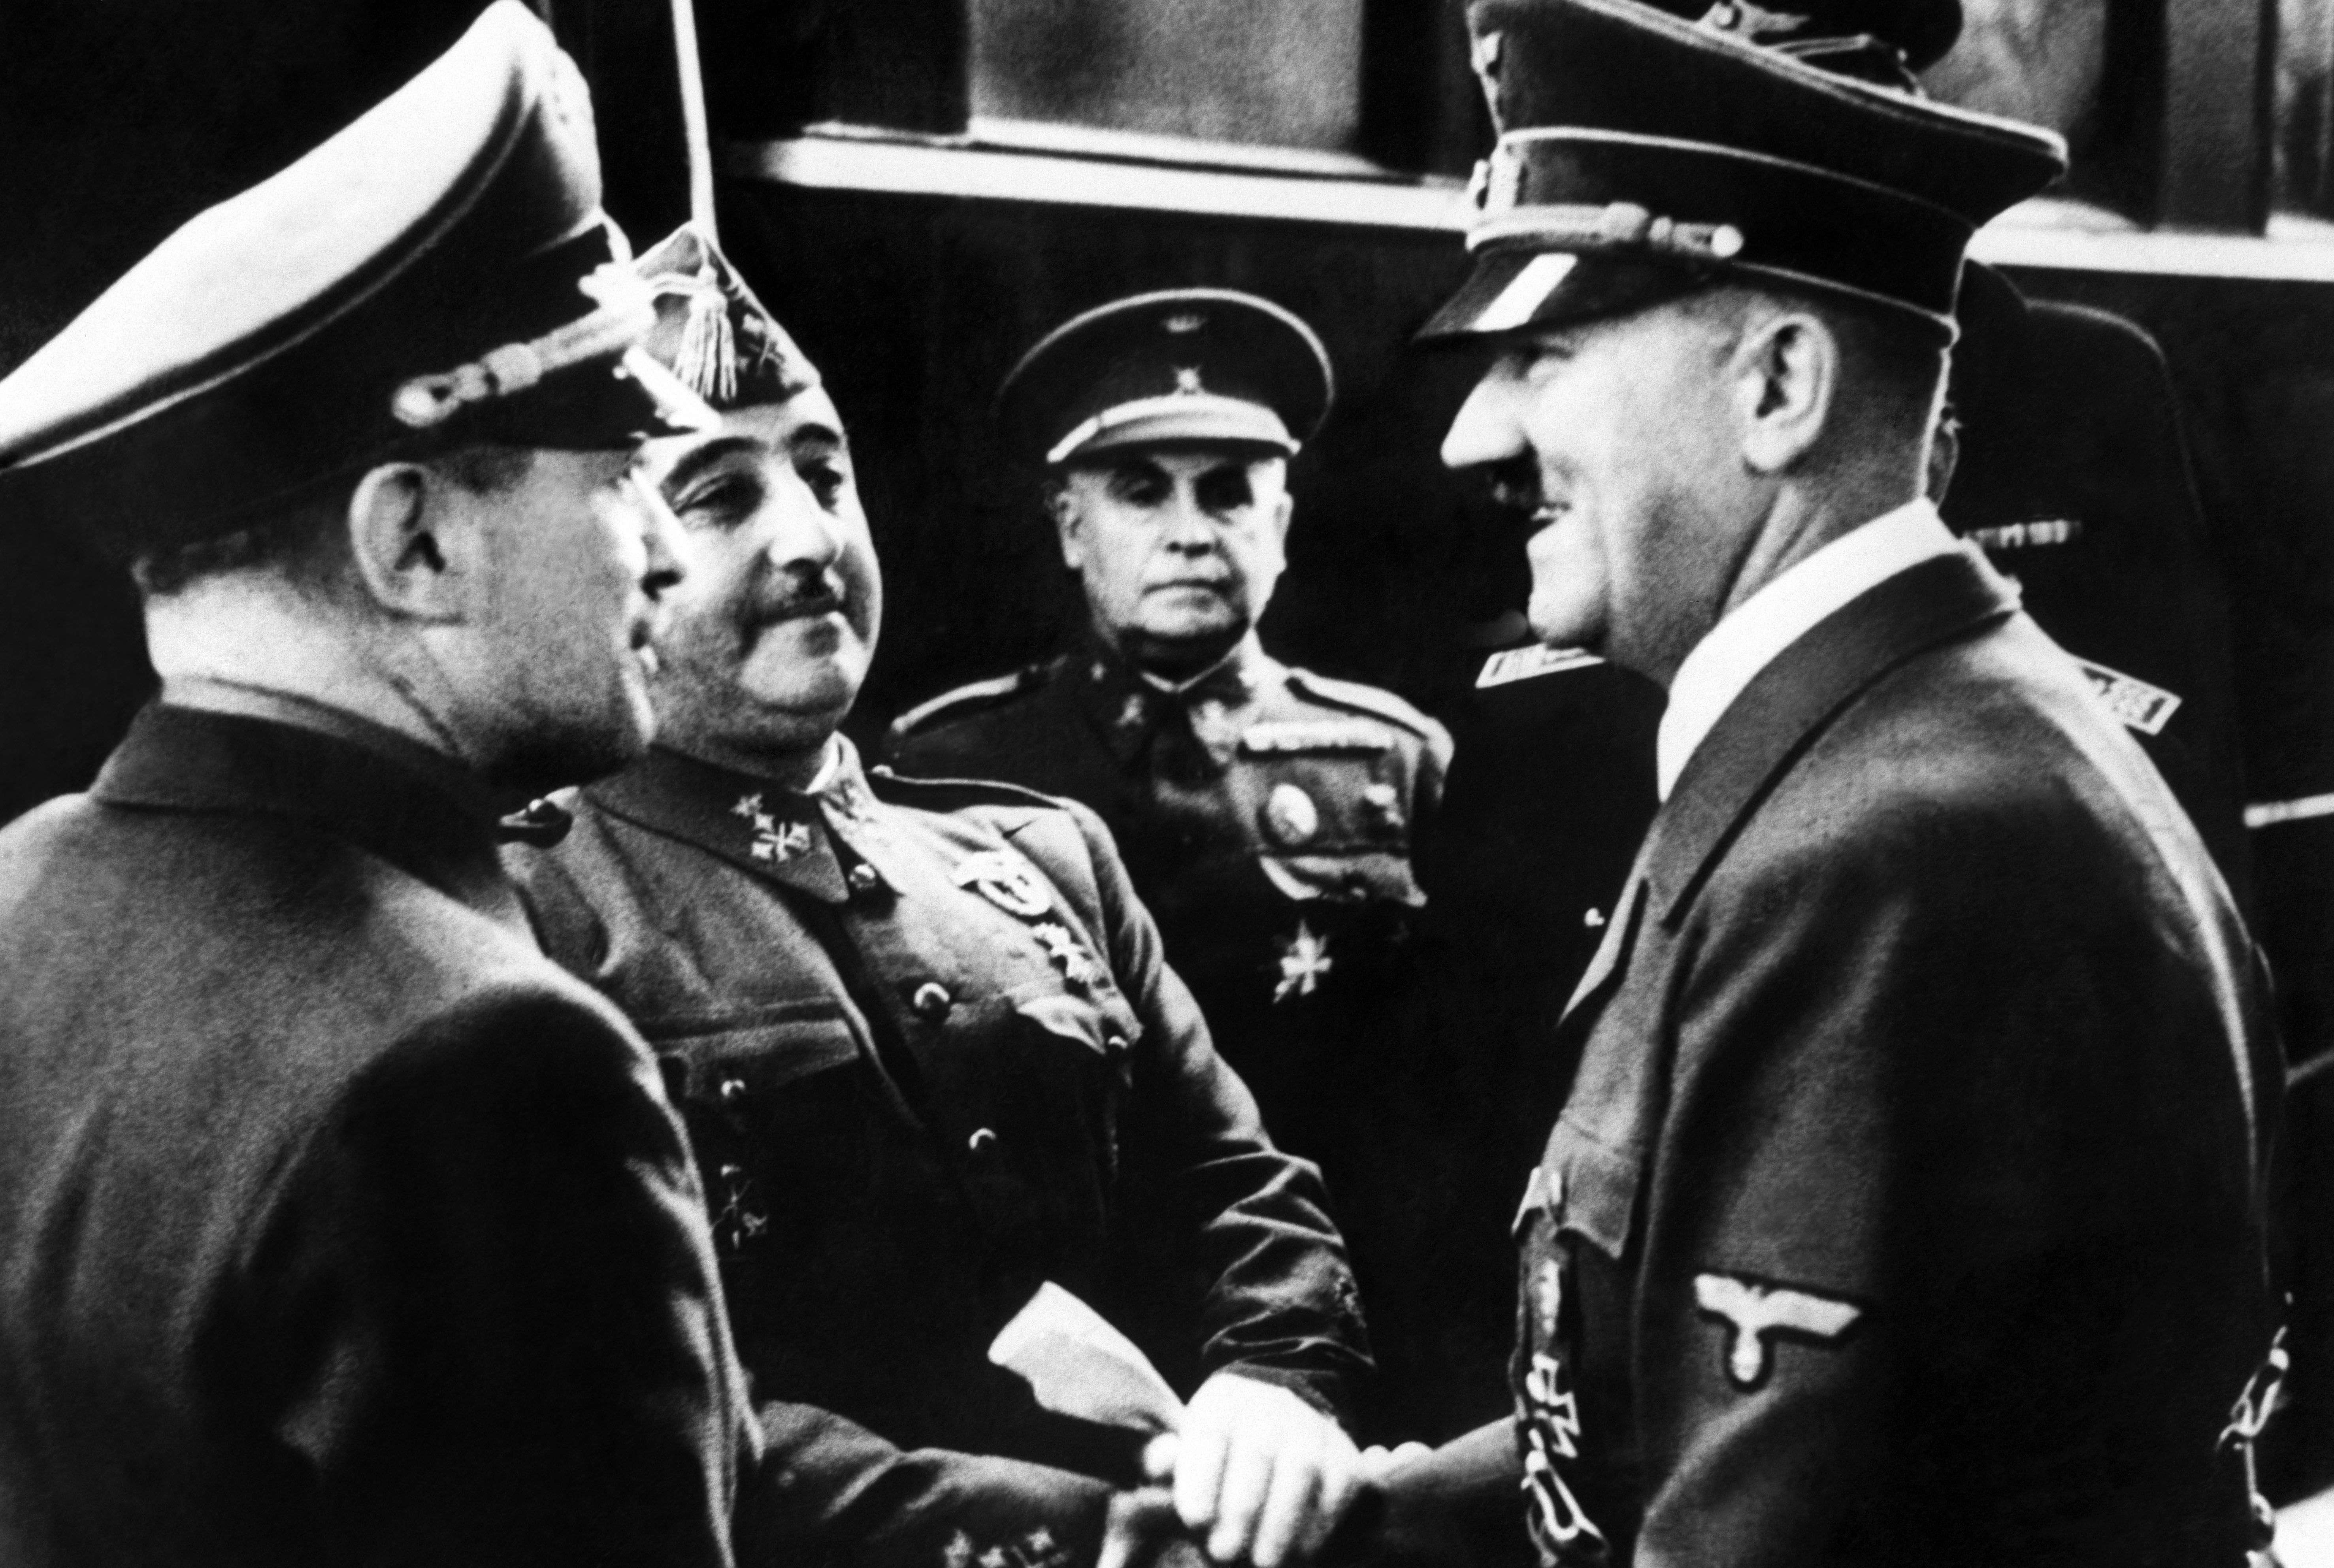 La Fundación Franco sostiene que el dictador español era "la antítesis" de Hitler